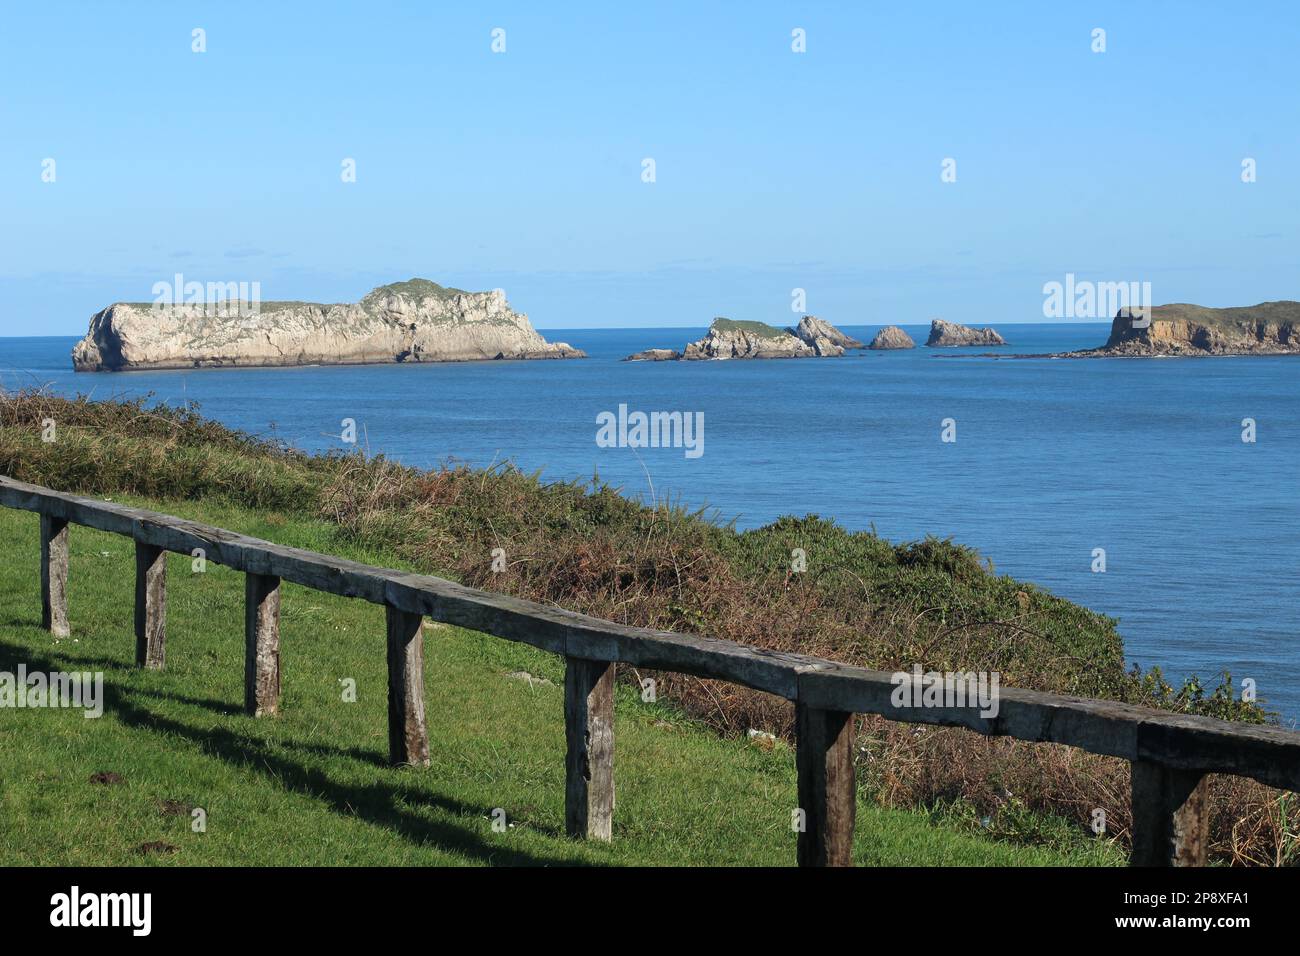 Isla de los Conejos en la villa de Suances, por donde entran las aguas del mar cantábrico a su playa de la Concha, con valla de madera y prado verde. Stock Photo